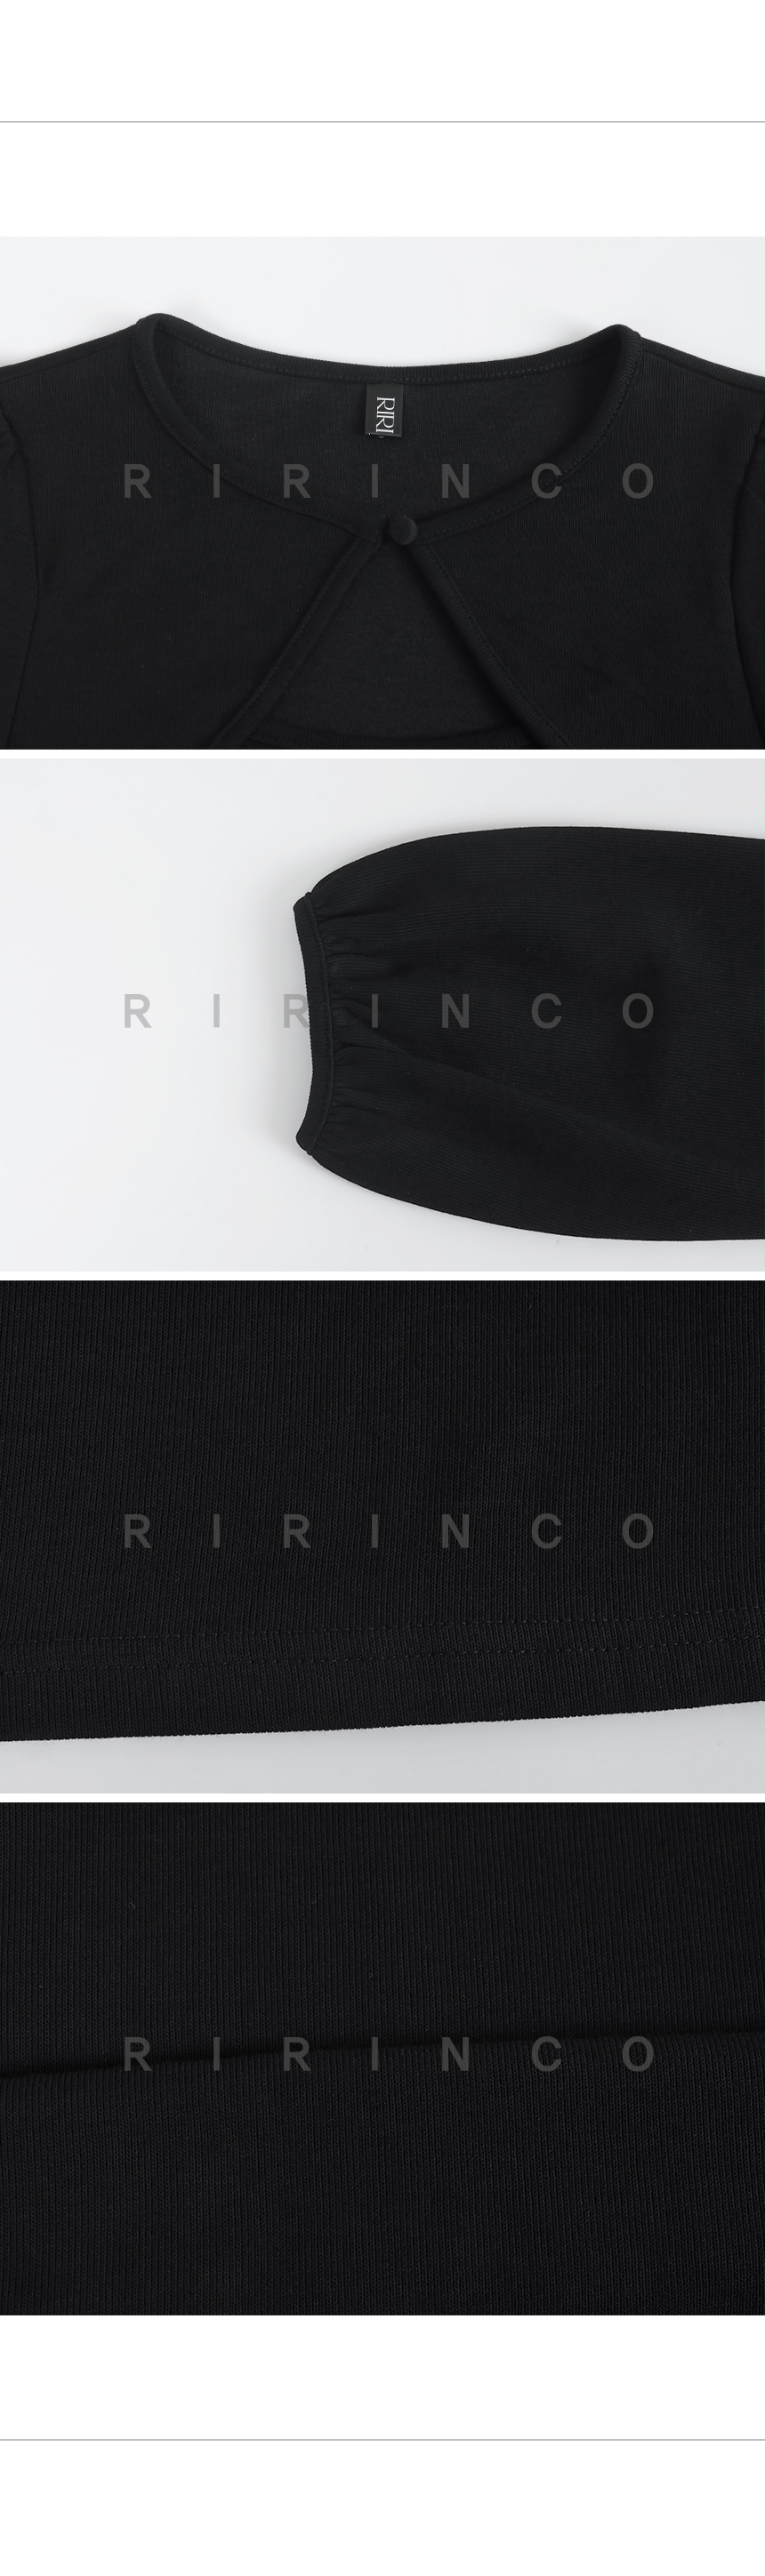 RIRINCO ボレロレイヤードTシャツ